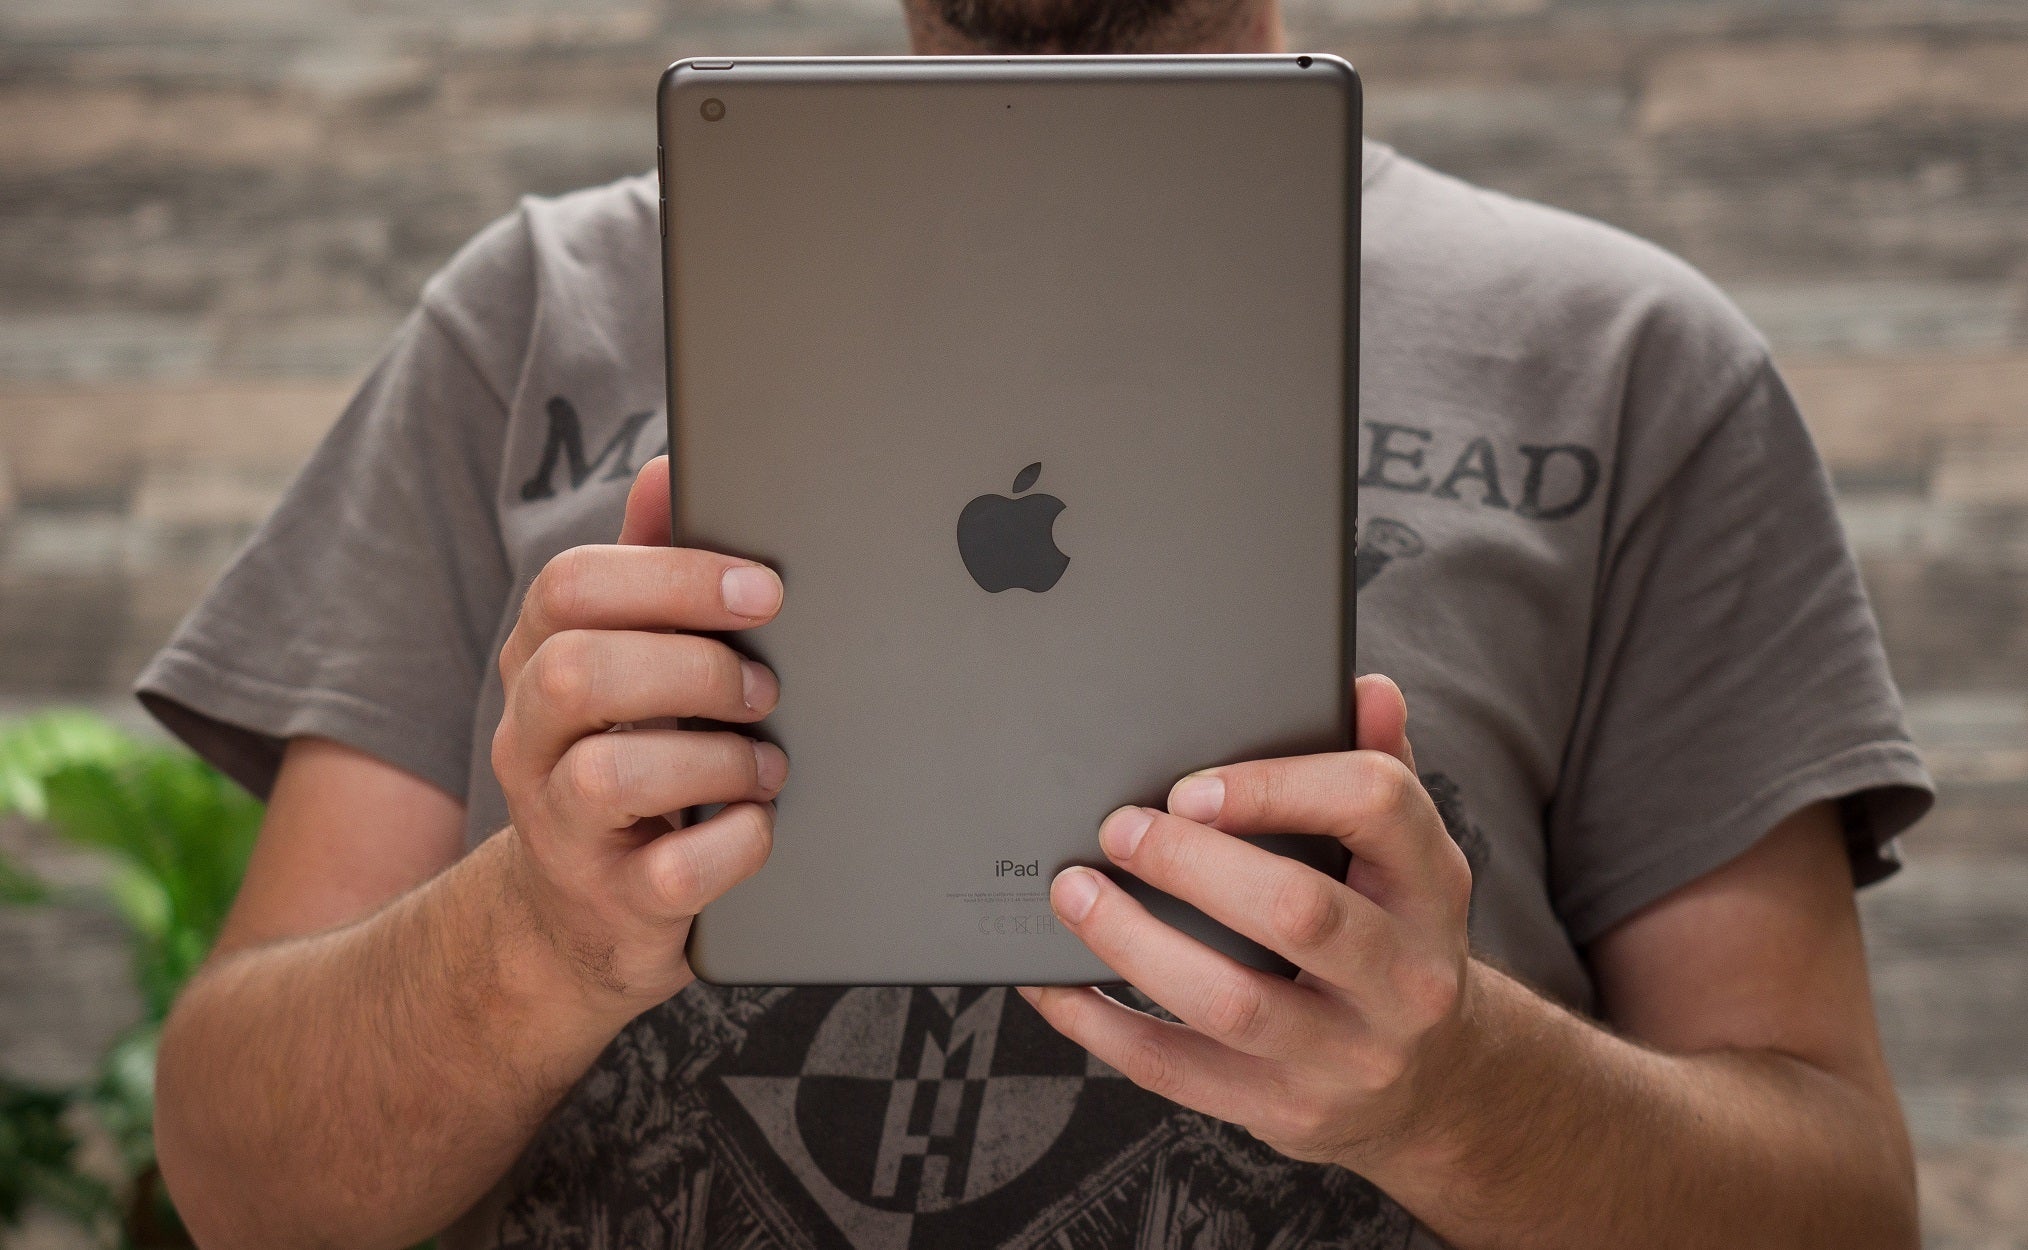 Which 2020 iPad (10.2-inch) storage option should I get? 32GB or 128GB?